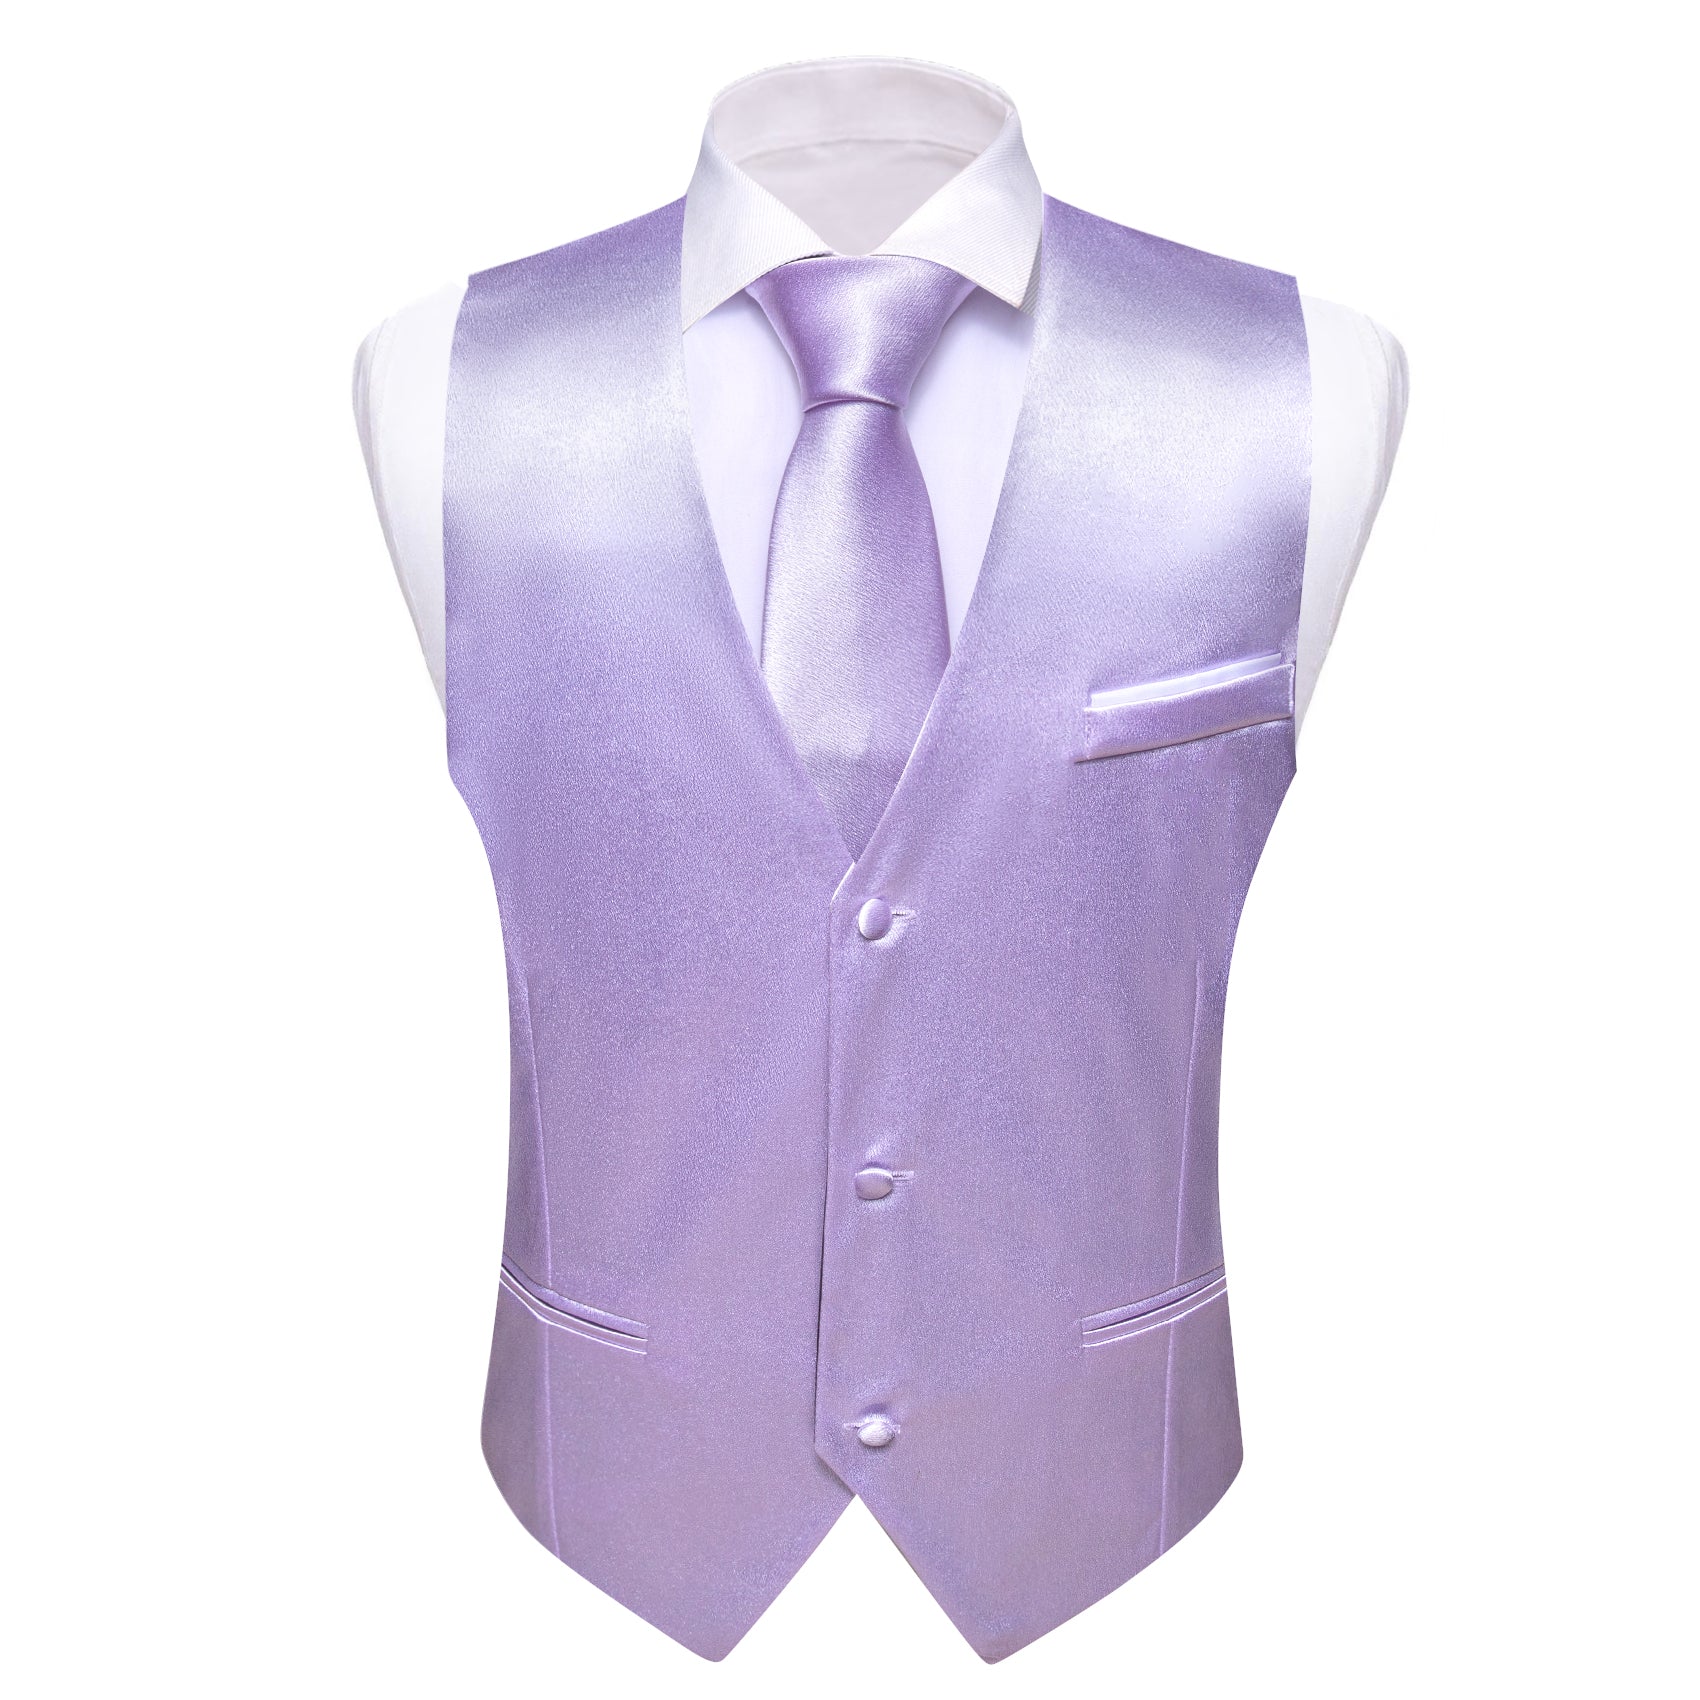 Barry.wang Purple Solid Business Vest Suit